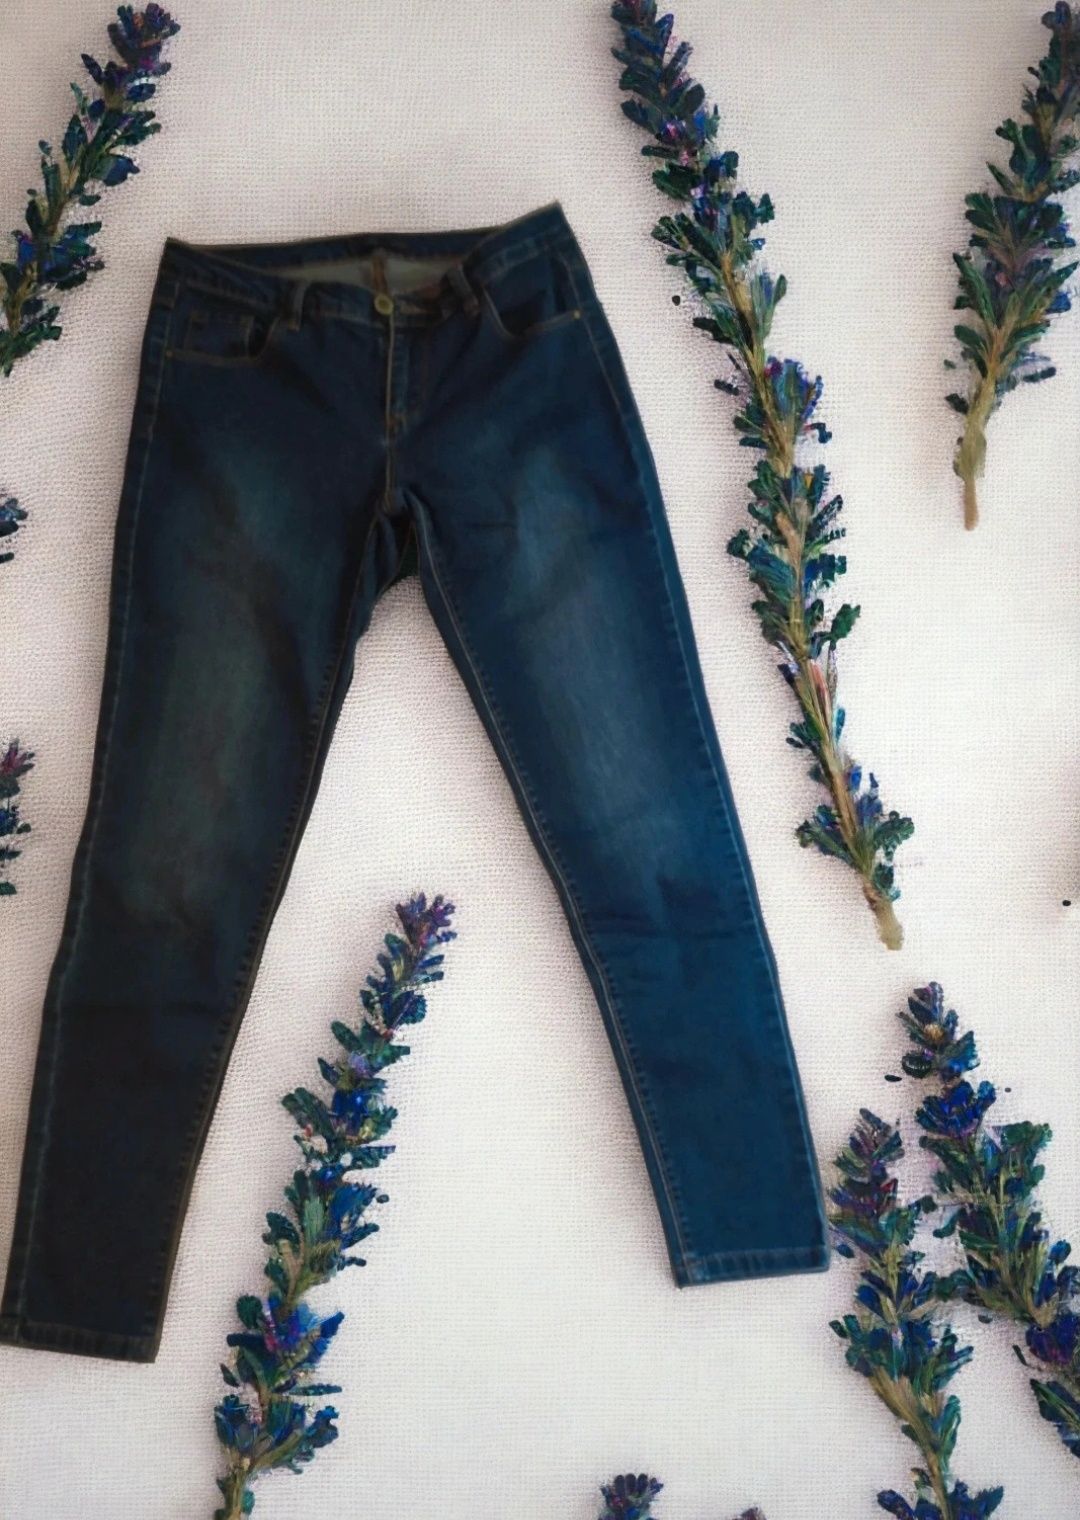 Spodnie damskie jeansowe denim dżinsy jeansy slim cropp m 38 s 36